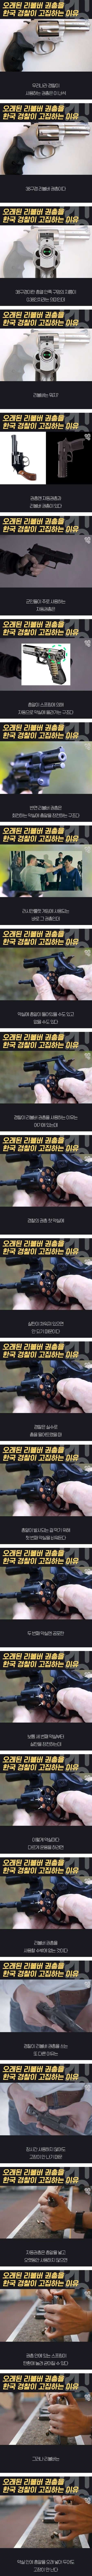 한국 경찰이 오래된 리볼버 권총을 고집하는 이유